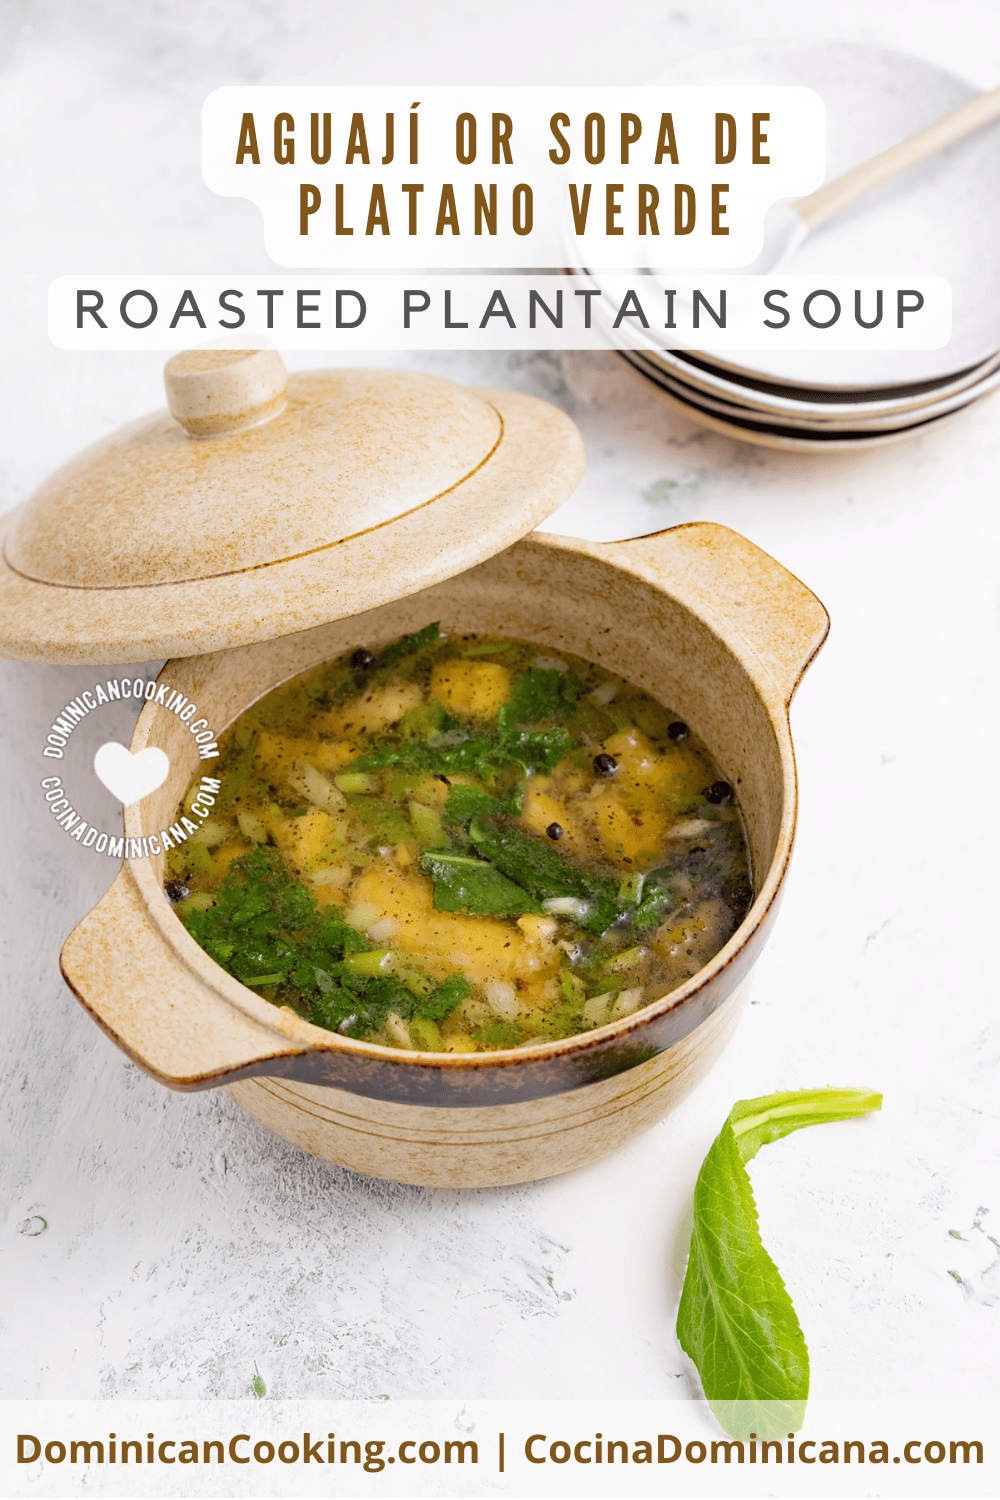 Aguaji or sopa de platano verde (roasted plantain soup) recipe.